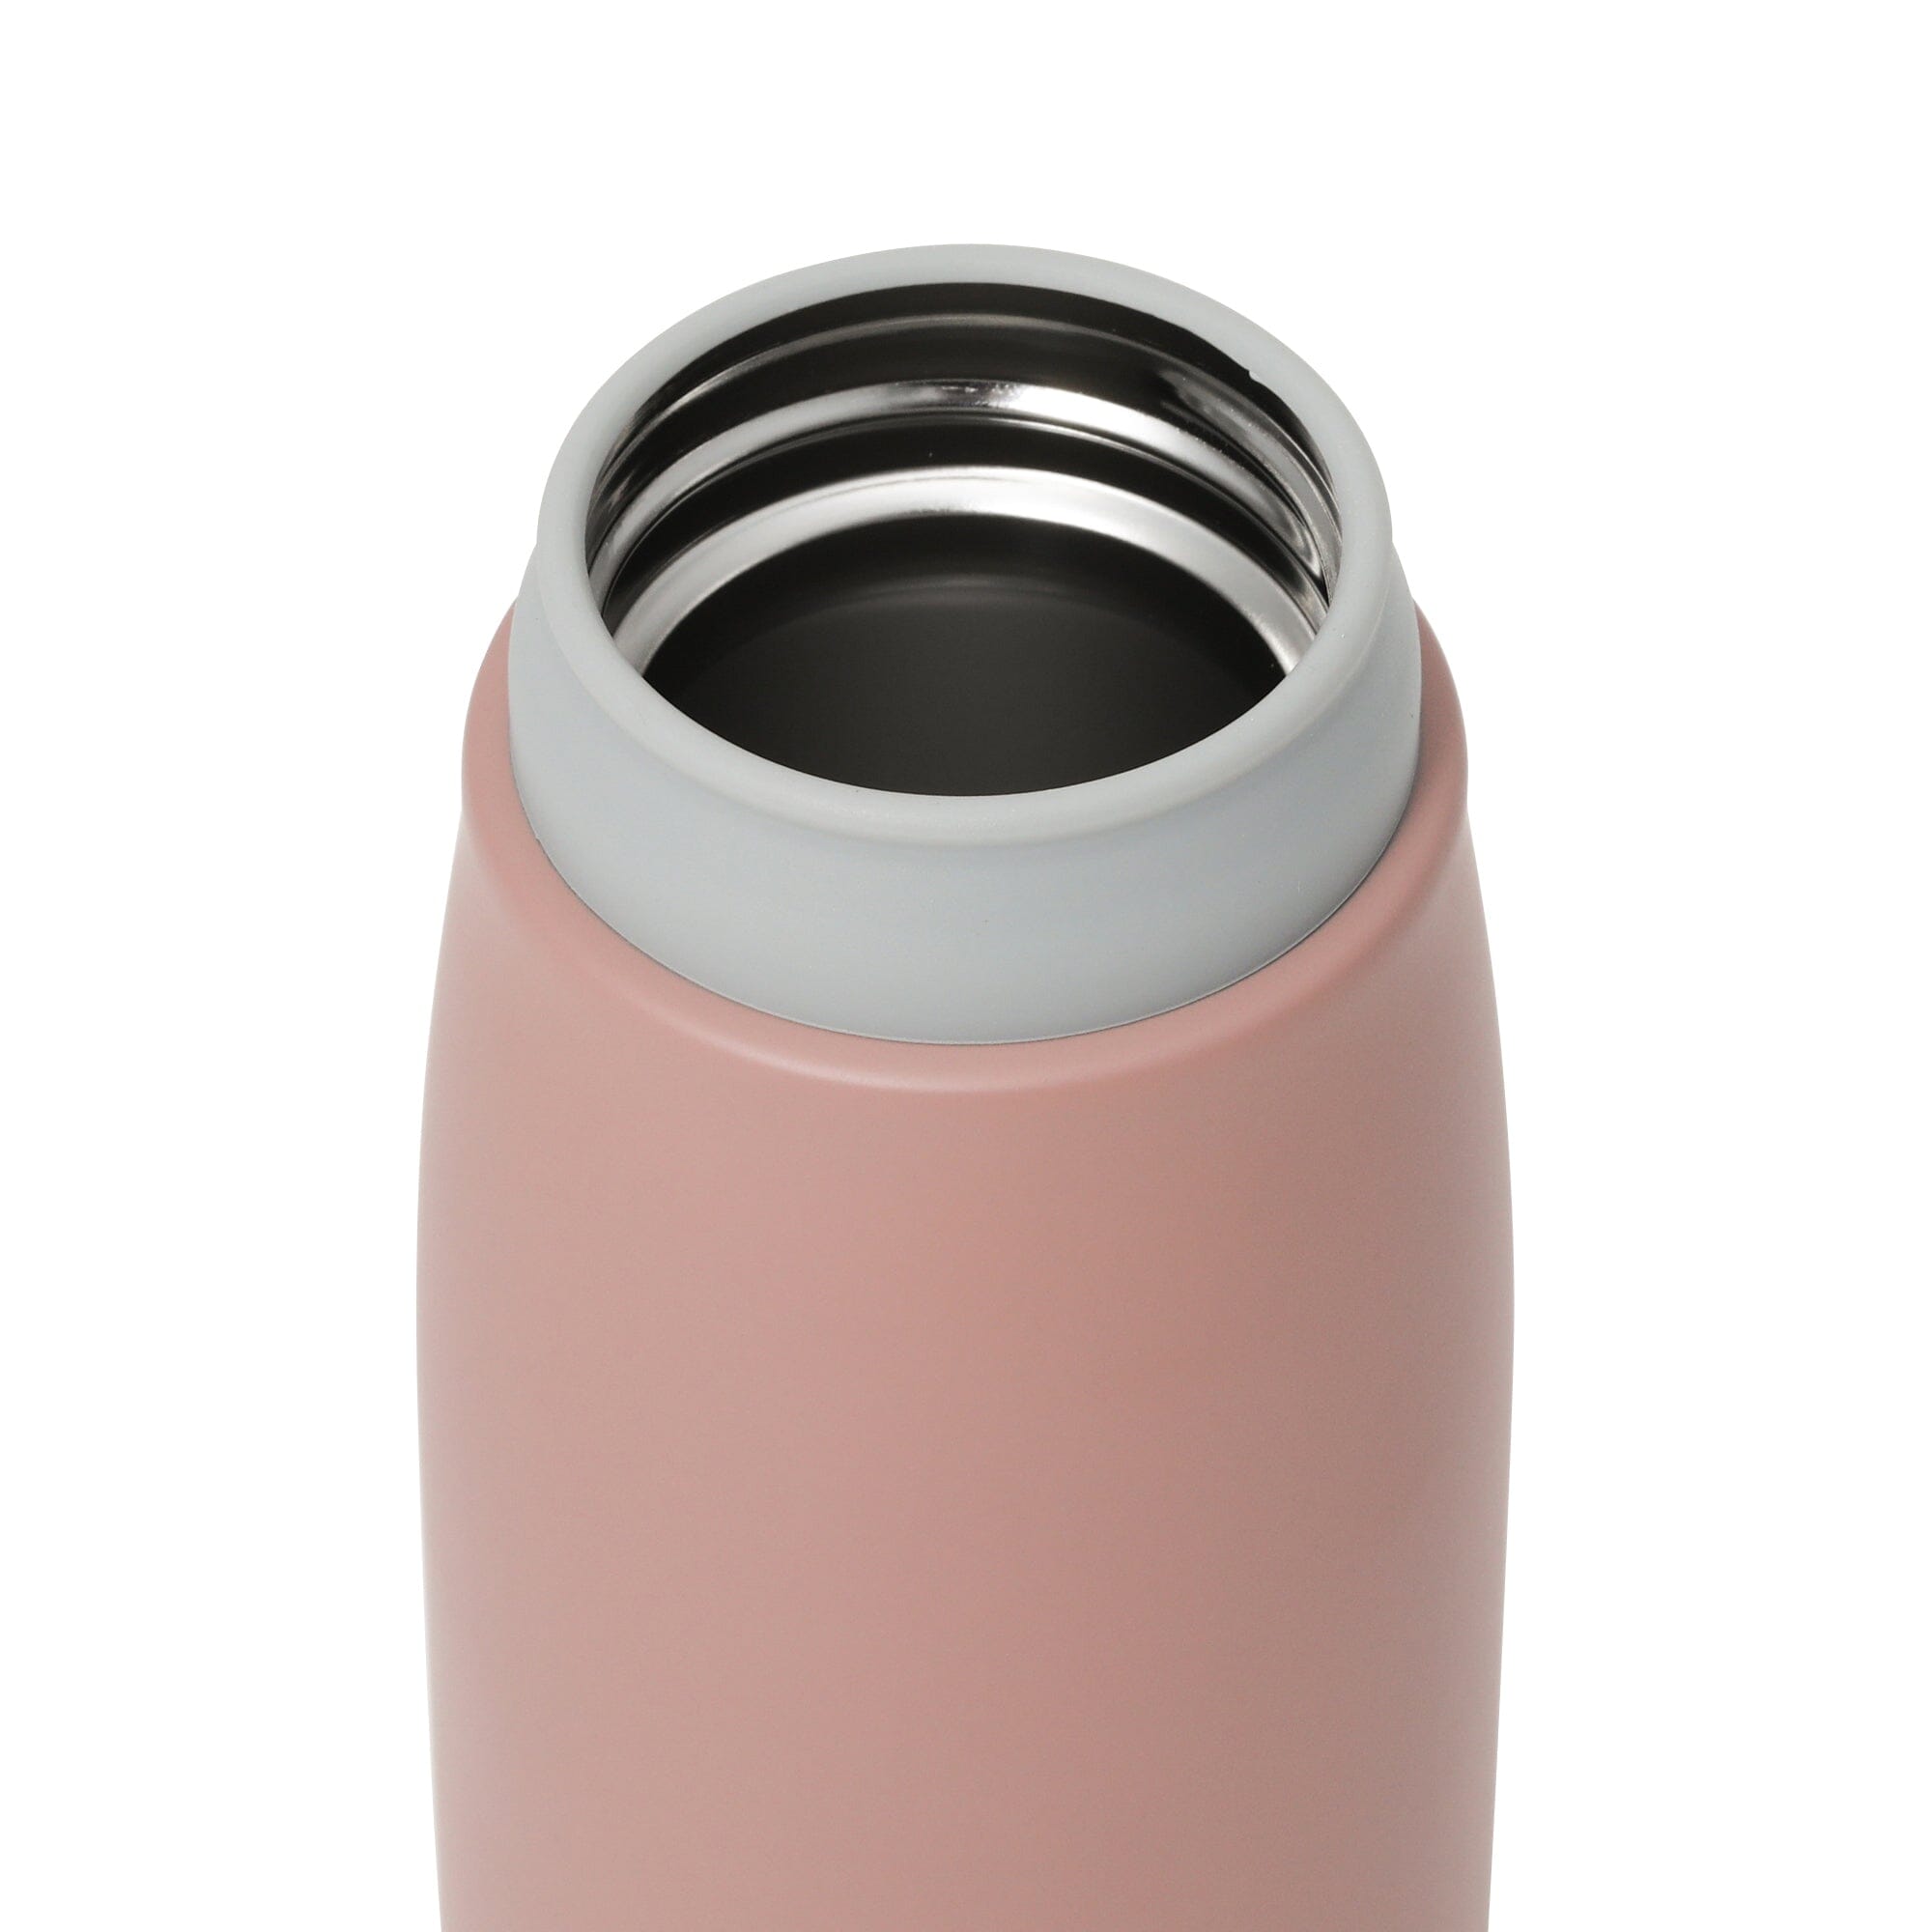 磨砂不銹鋼瓶架套件 350ml 粉紅色